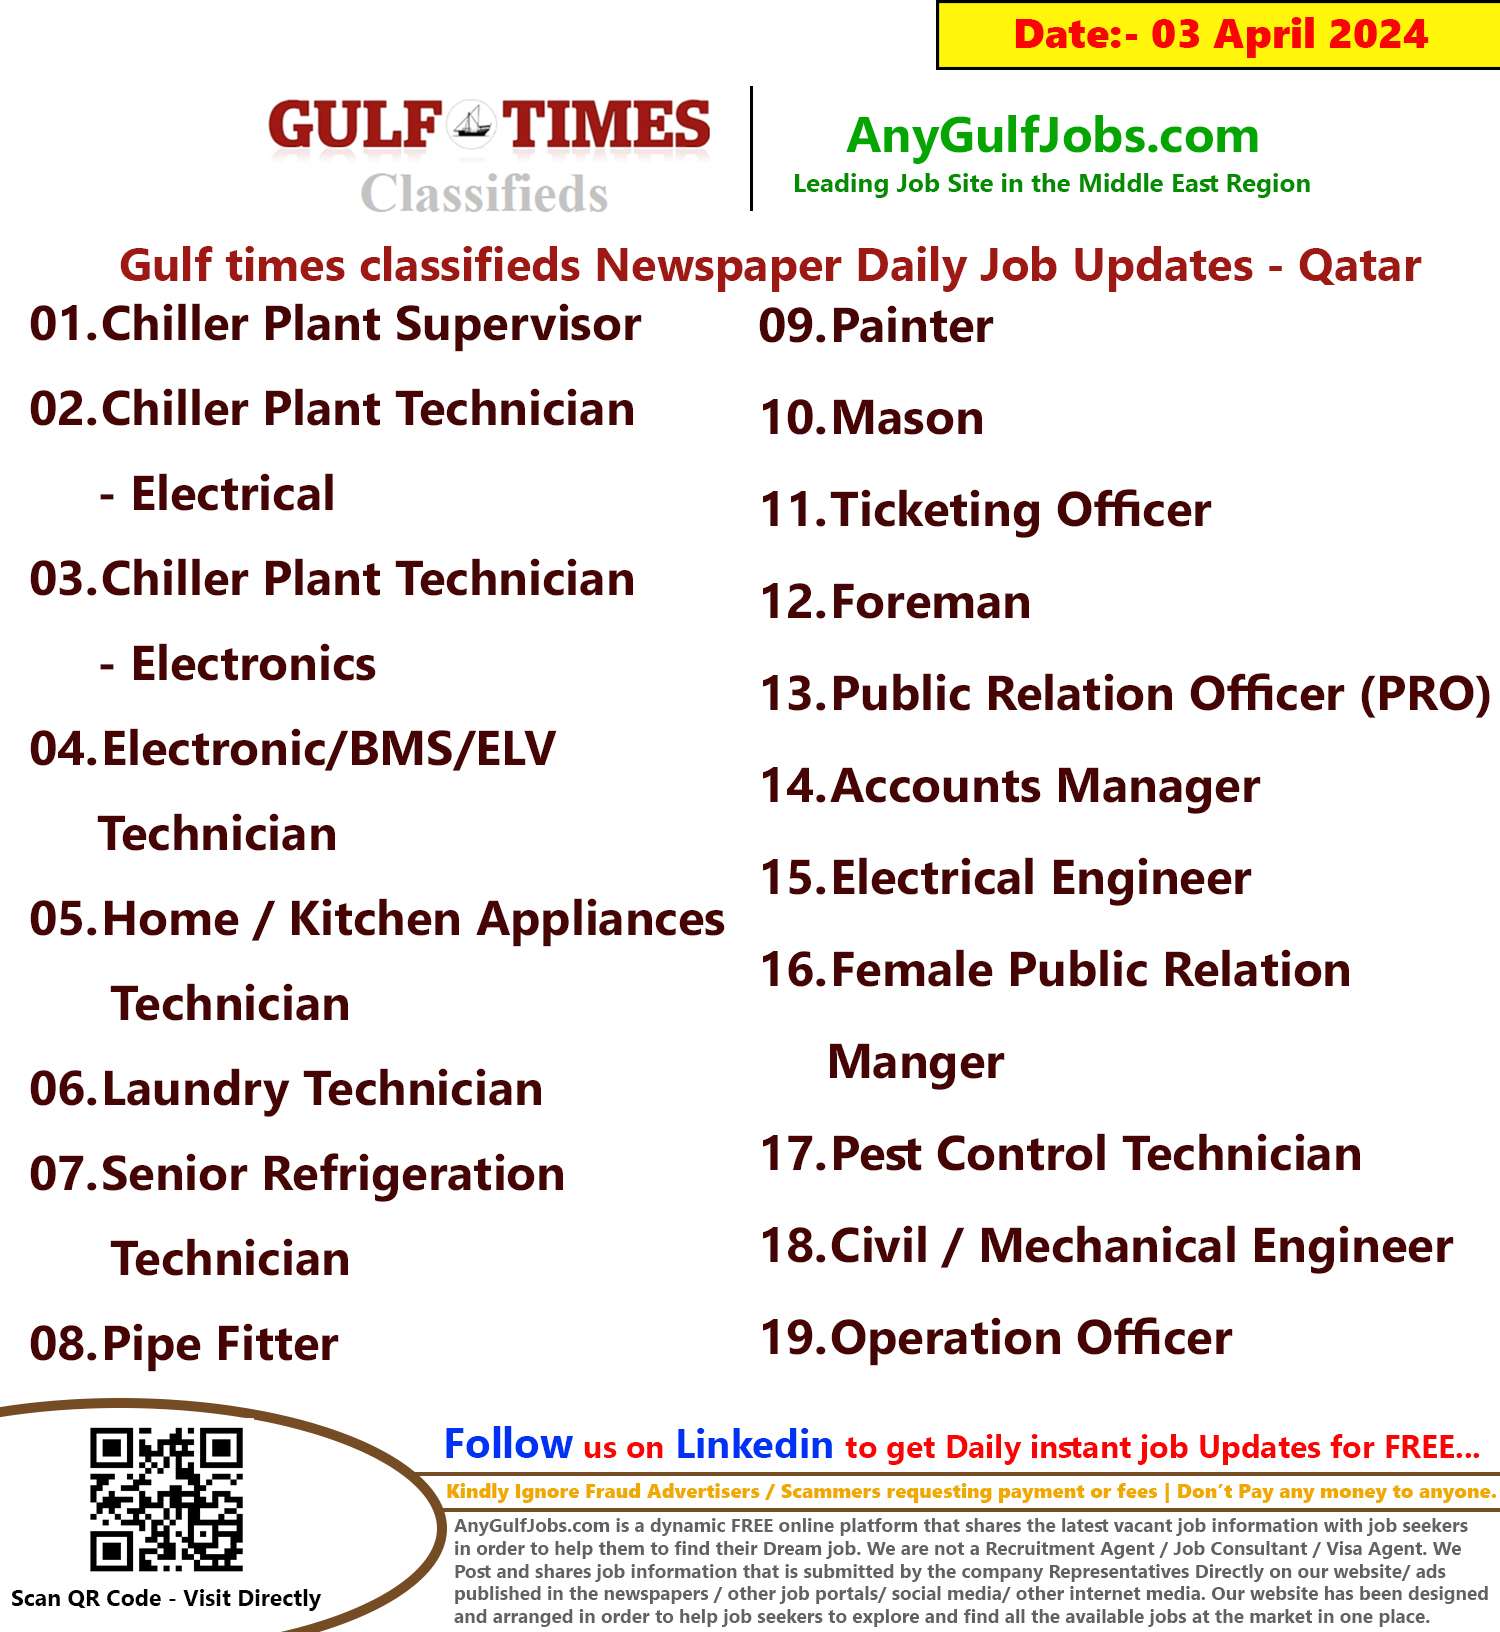 Gulf Times Classifieds Job Vacancies Qatar - 03 April 2024